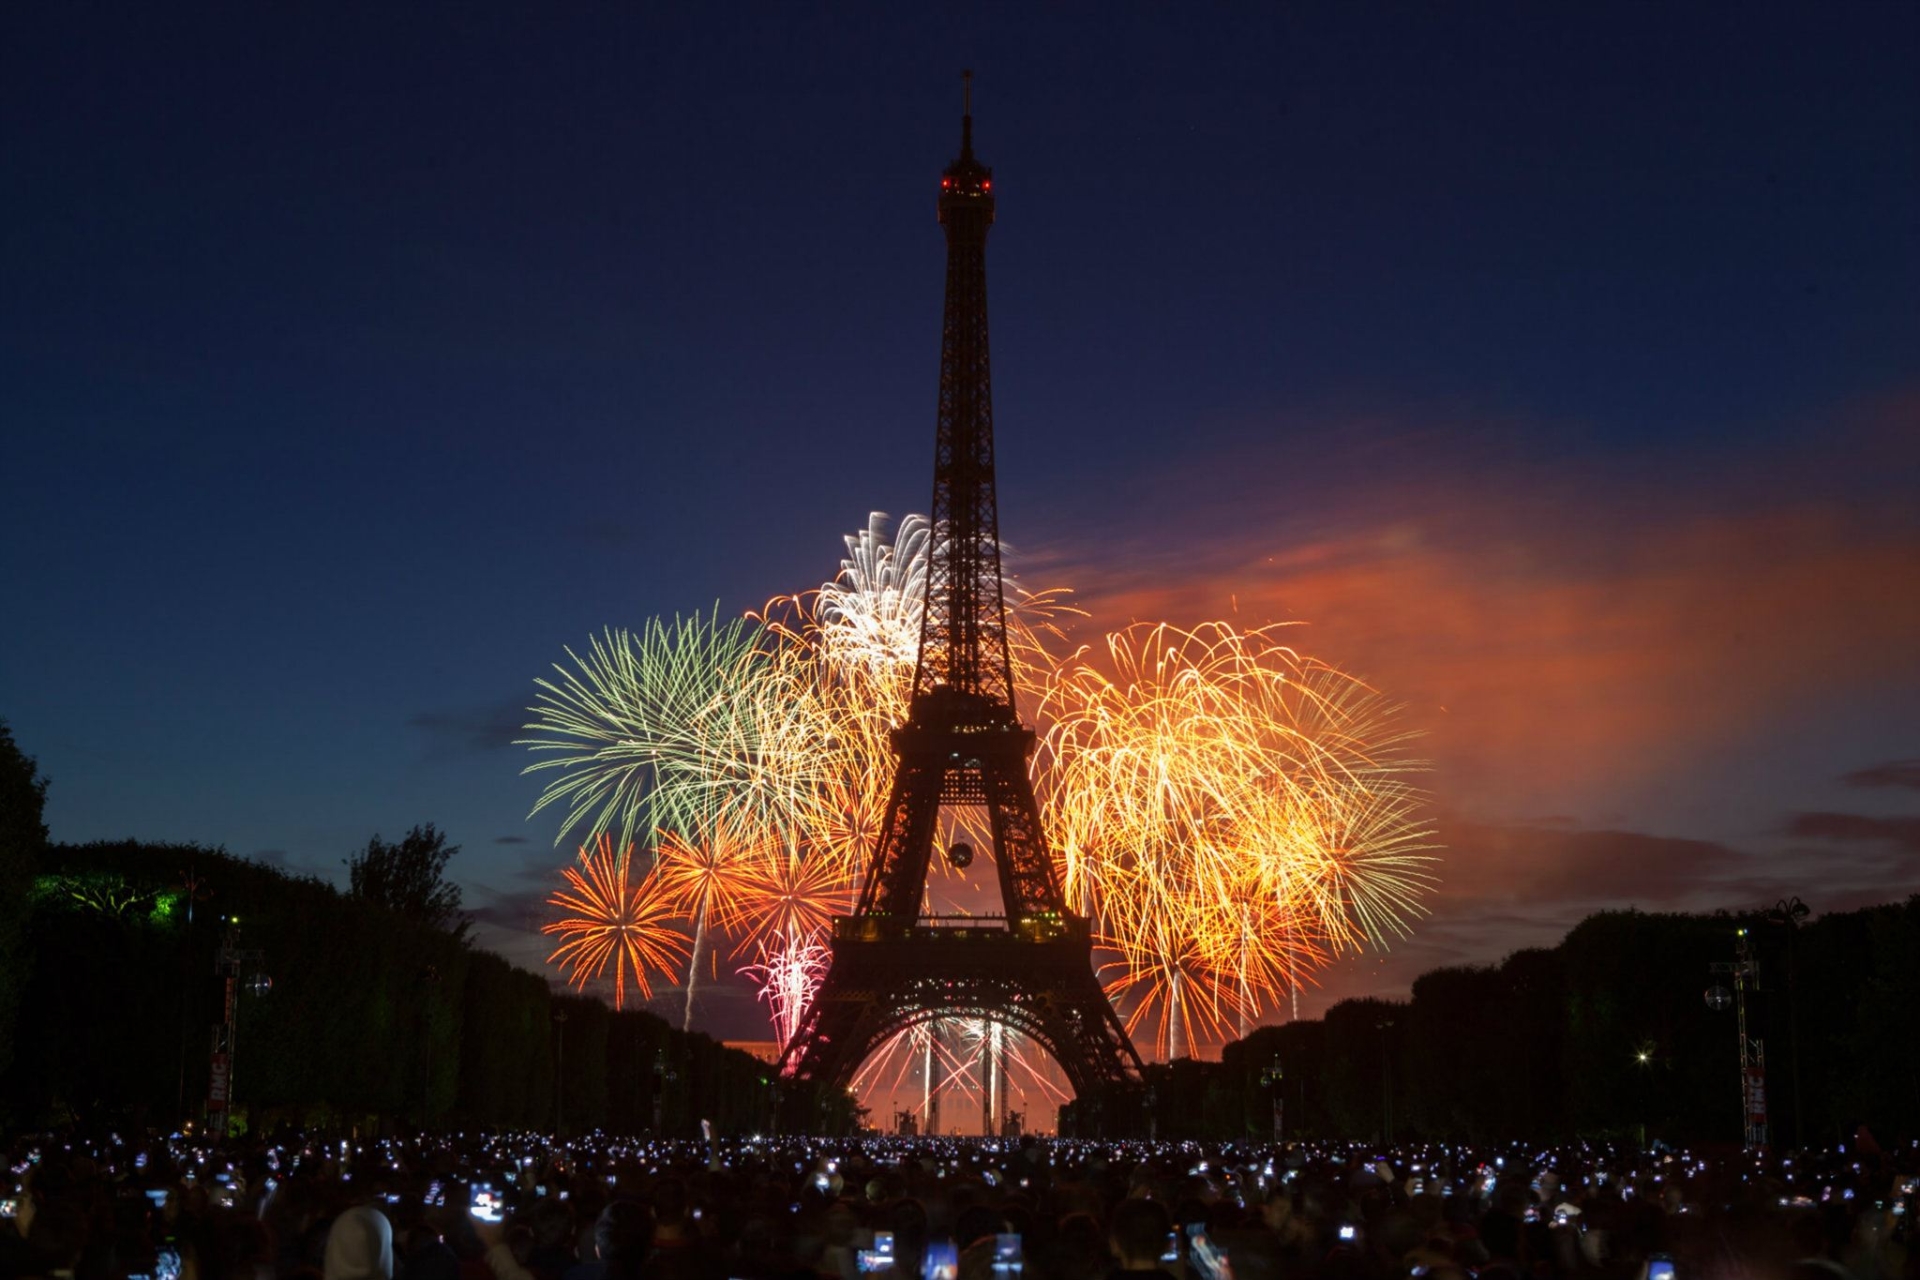 Téléchargez gratuitement l'image Paris, Tour Eiffel, Les Monuments, Construction Humaine sur le bureau de votre PC